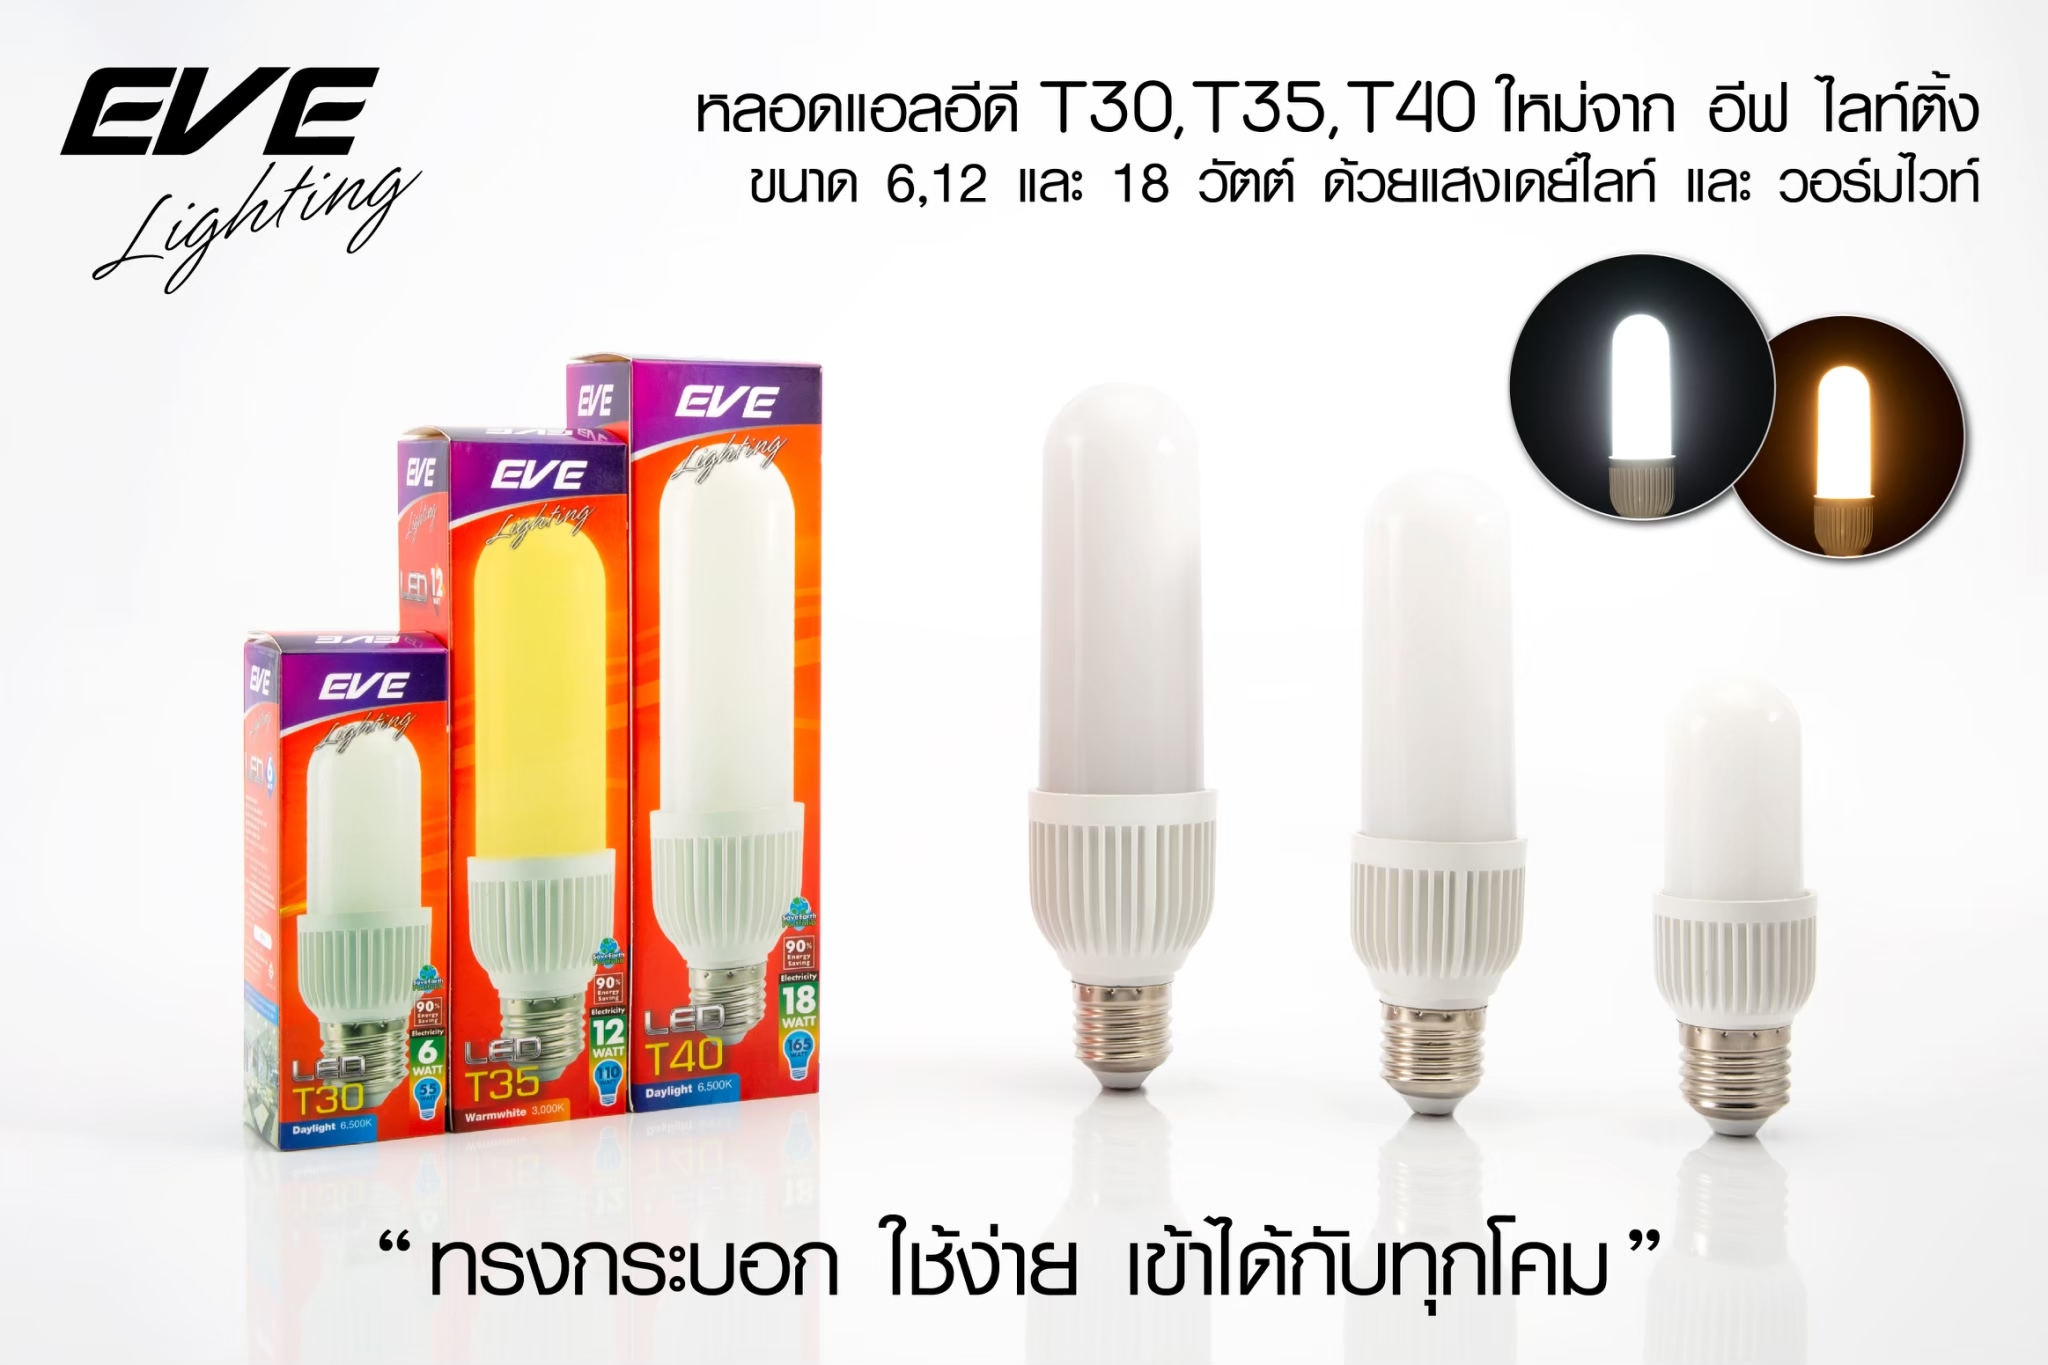 LED T30 E27 หลอดแอลอีดี T30 ขนาด  6-18 วัตต์ แสงขาวและแสงเหลือง (35,000 ชั่วโมง) แสงออกรอบตัวใช้แทนหลอดประหยัด